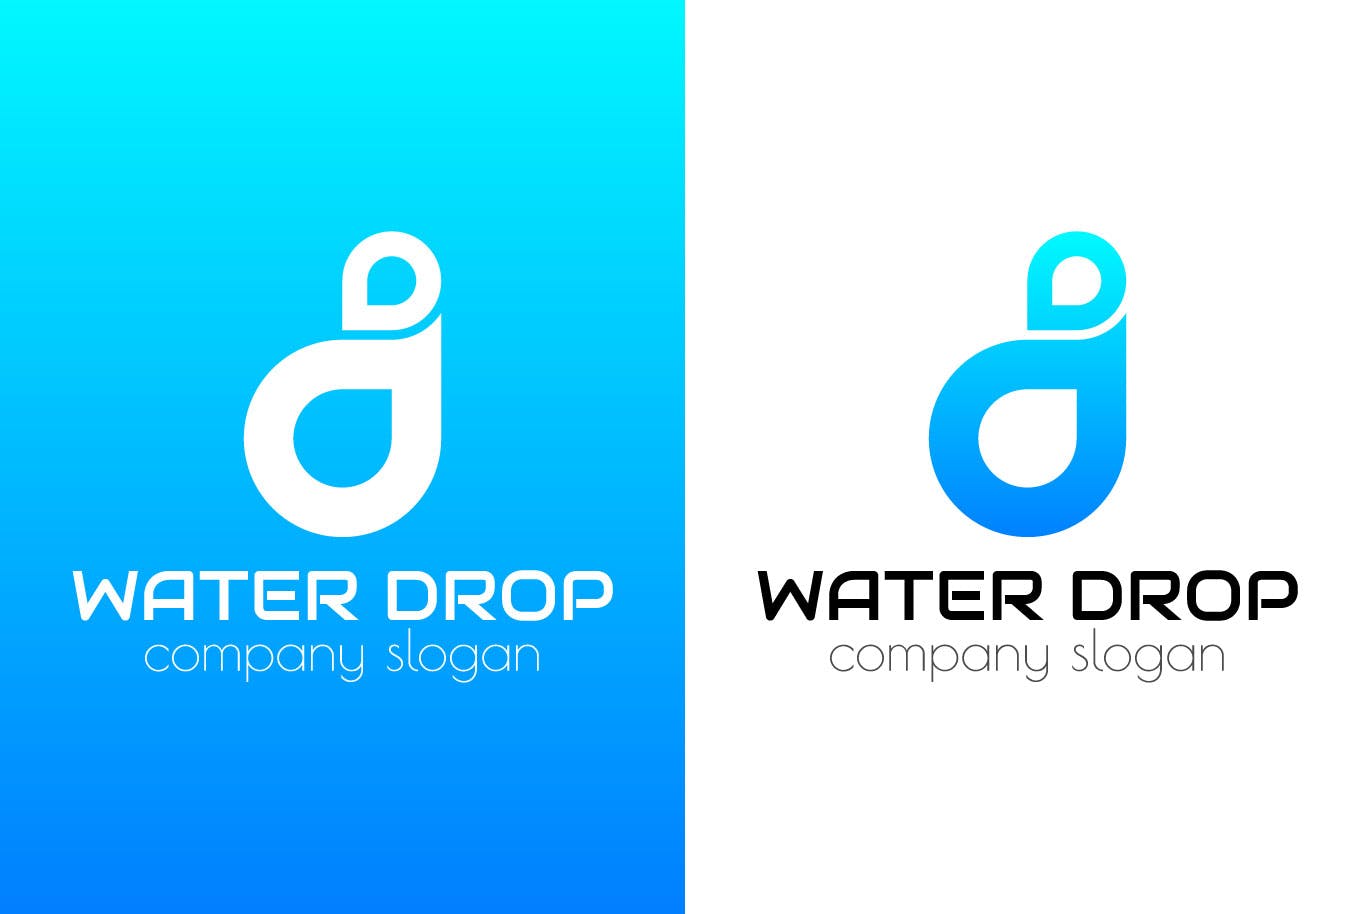 水滴几何图形创意Logo设计素材库精选模板 Water Drop Creative Logo Template插图(1)